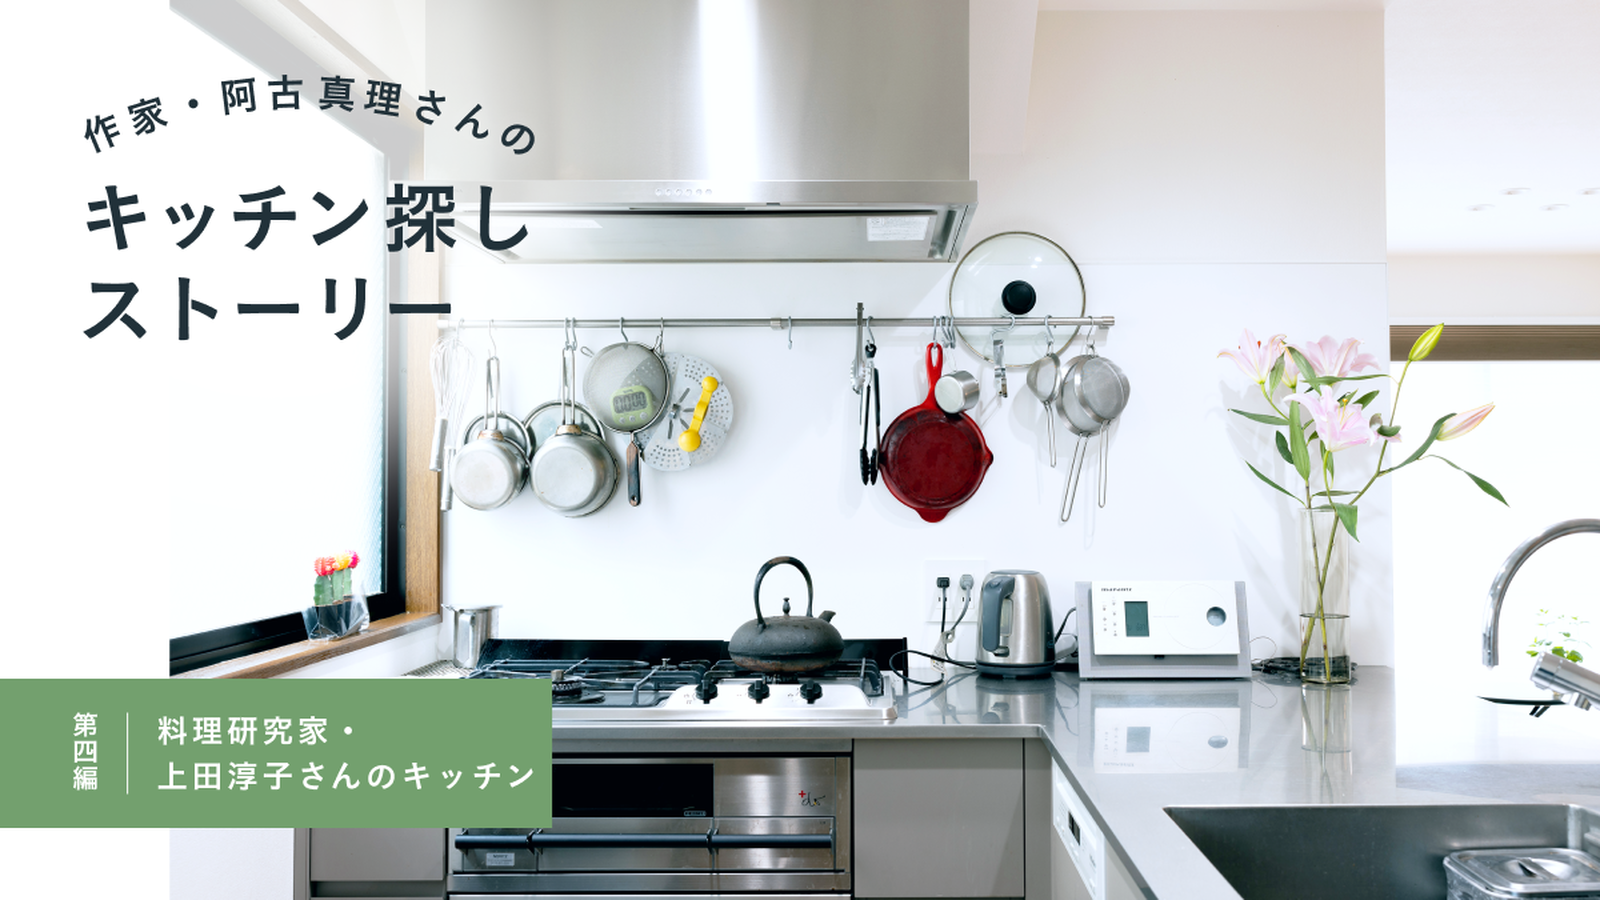 作家・阿古真理さんのキッチン探しストーリー　第四編「料理研究家・上田淳子さんのキッチン」